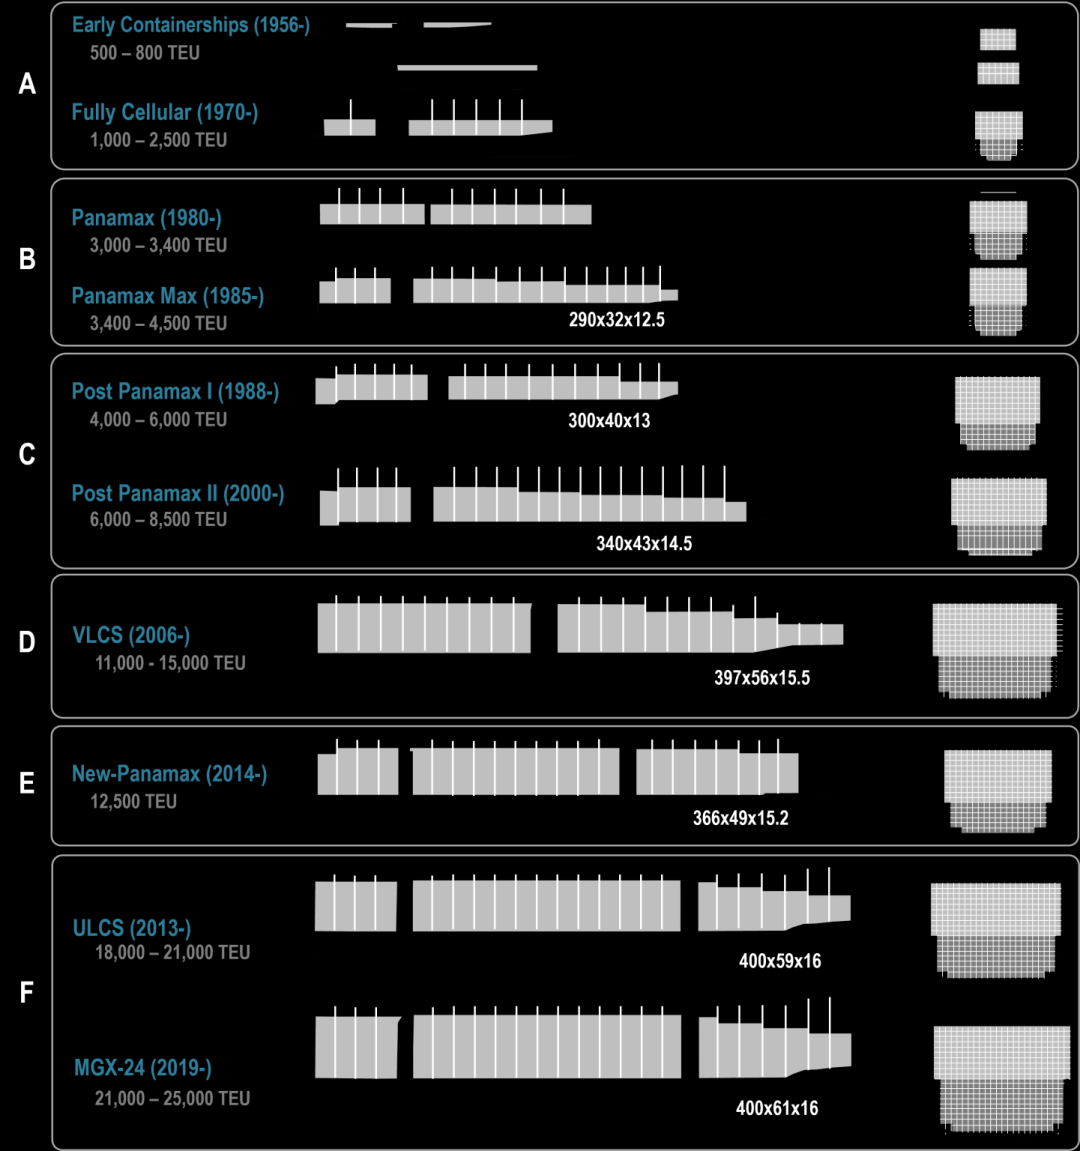 24000TEU的大船，都会靠哪些港？ 